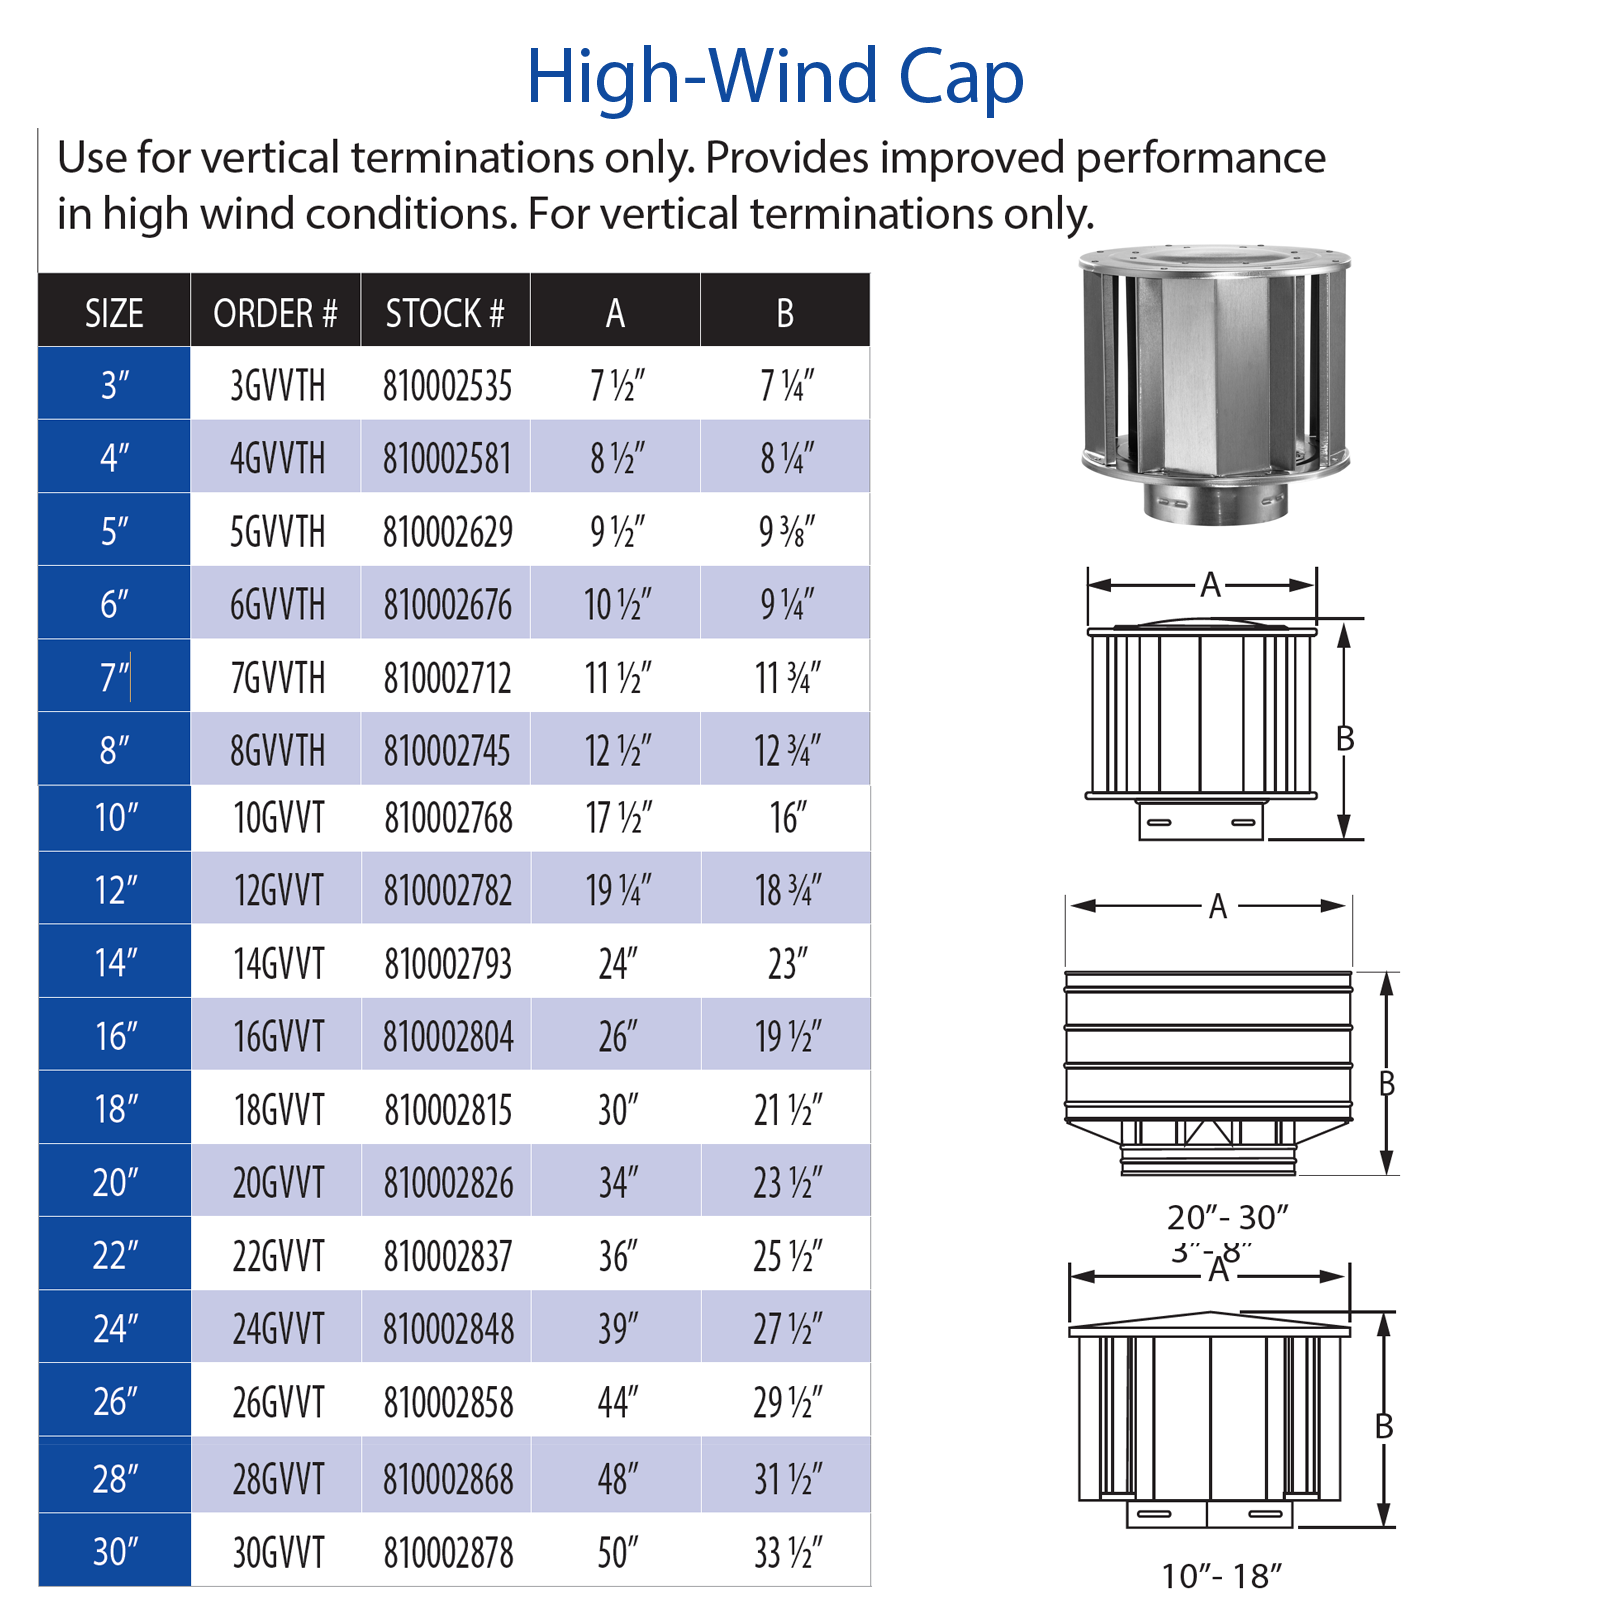 DuraVent Type B High-Wind Cap | 5GVVTH